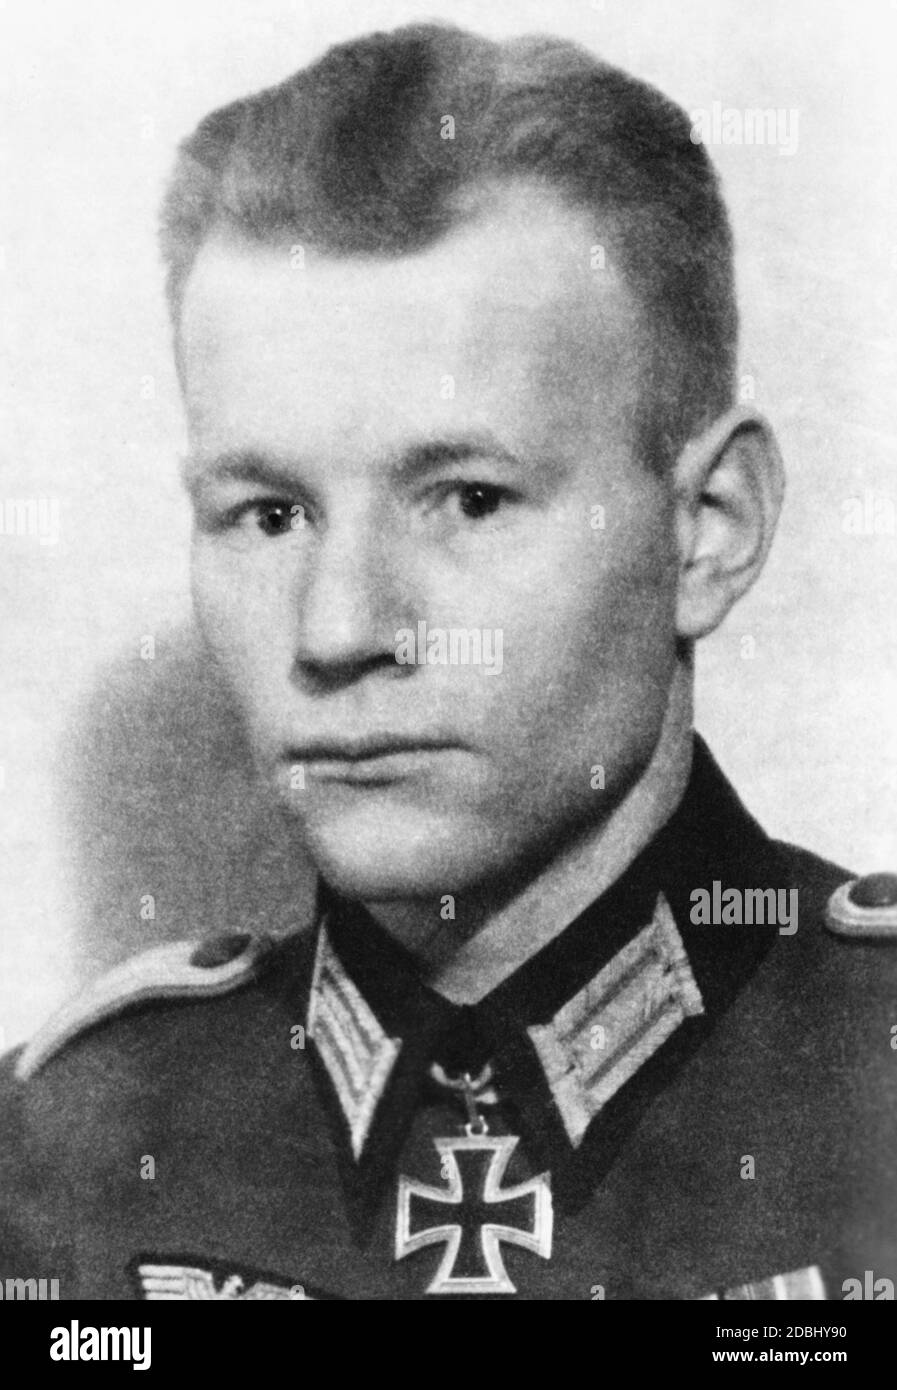 Leutnant Friedrich Wilhelm von einem, genannt Rothmaler, I./Artillerieregiment 230, mit dem Ritterkreuz. Das Datum gibt das Datum der Selbsthingabe an. Stockfoto